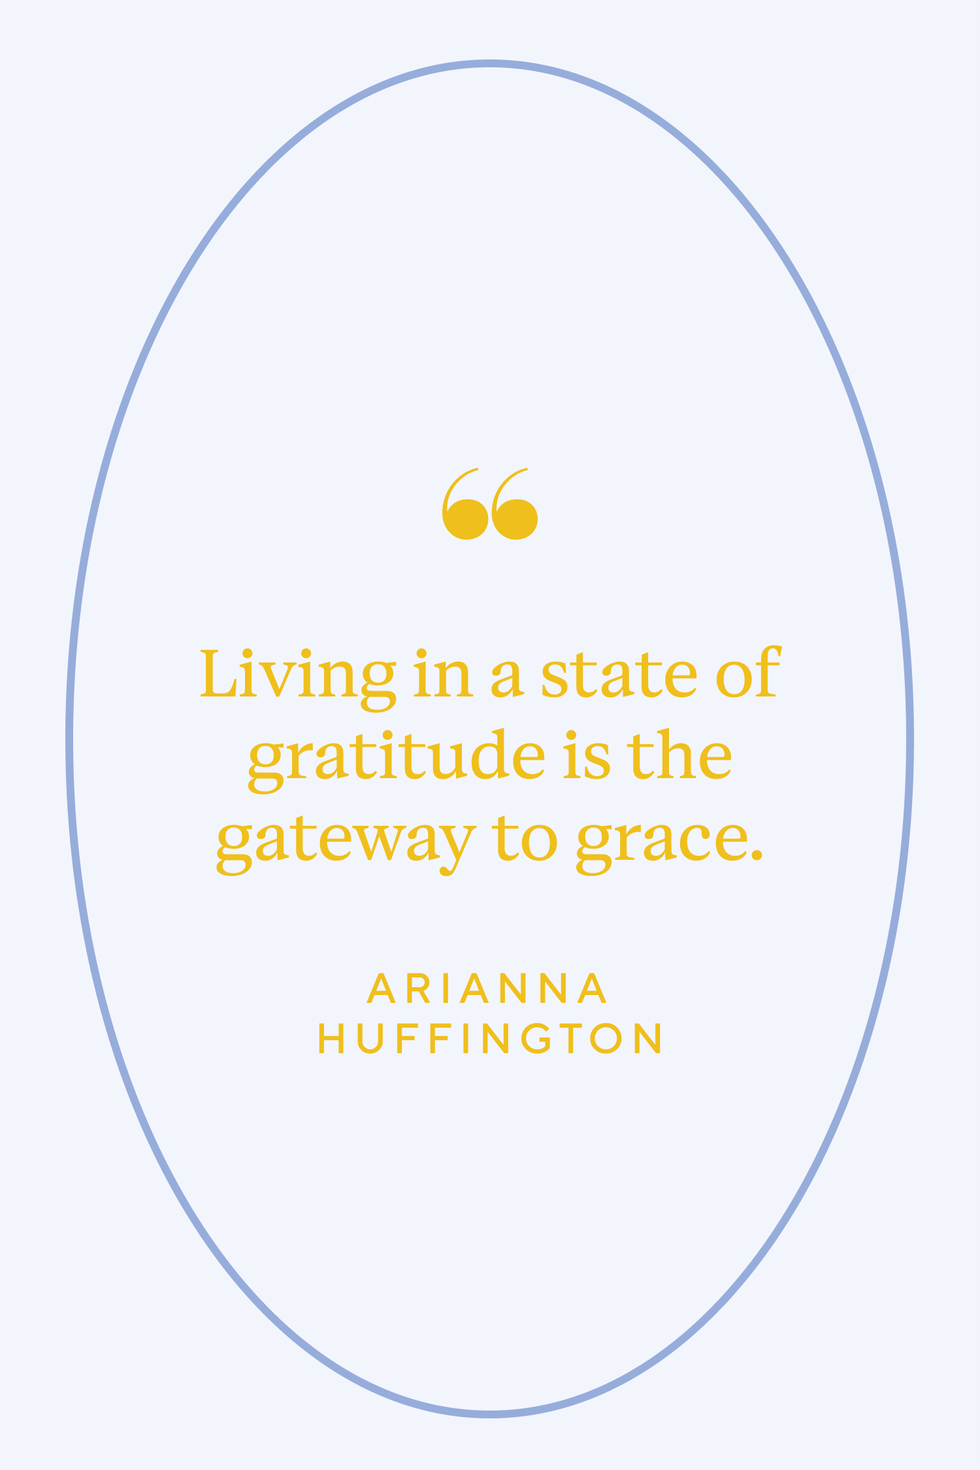 50 Best Gratitude Quotes